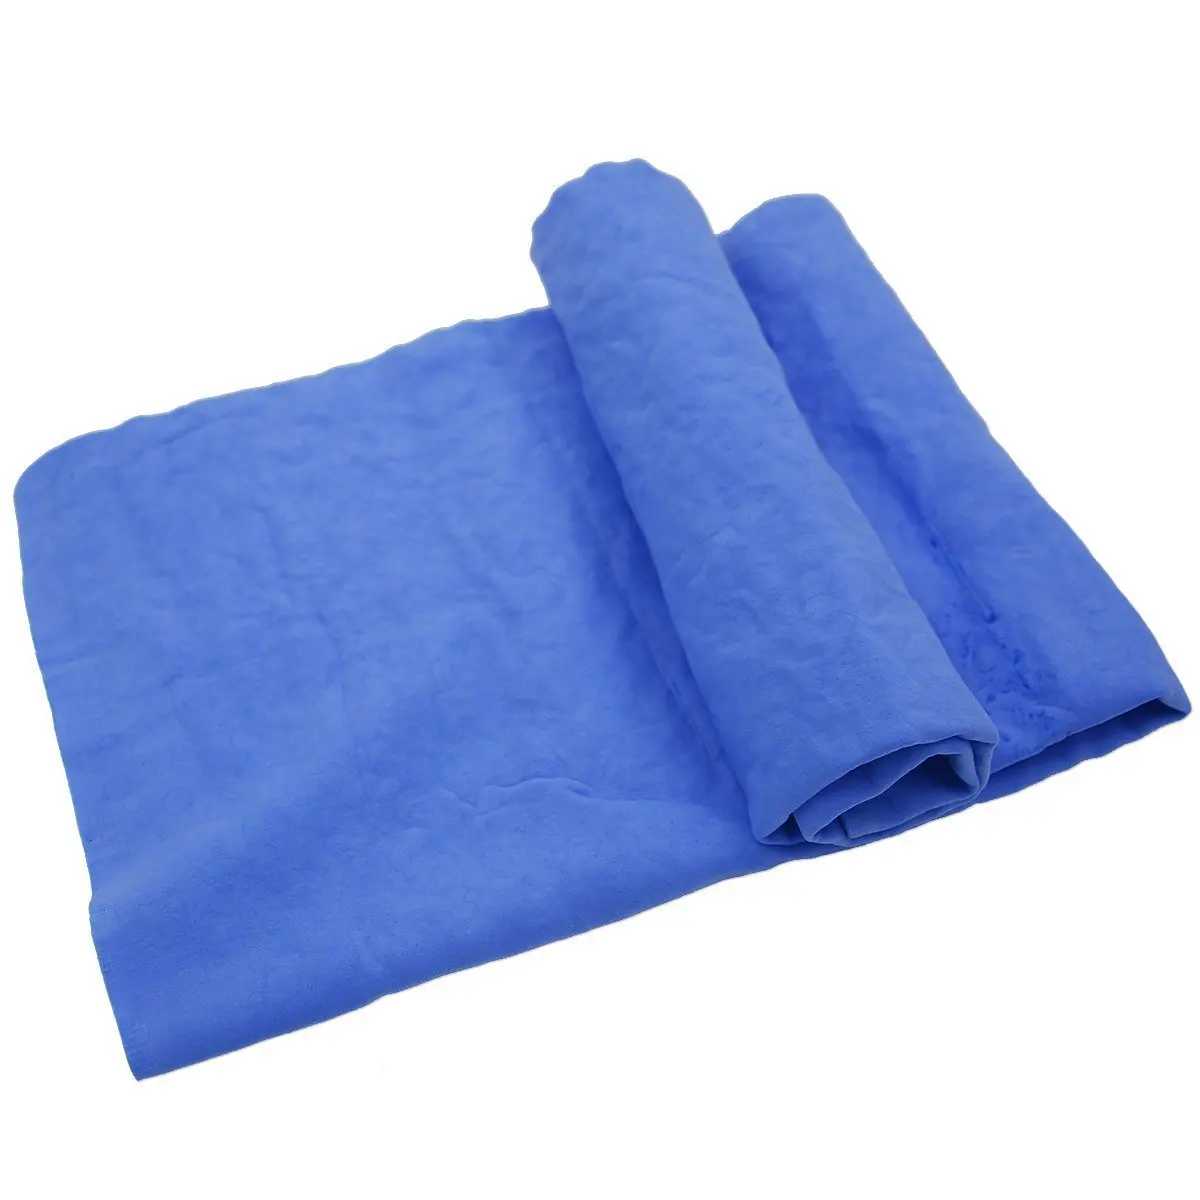 groomers aquasorb towel